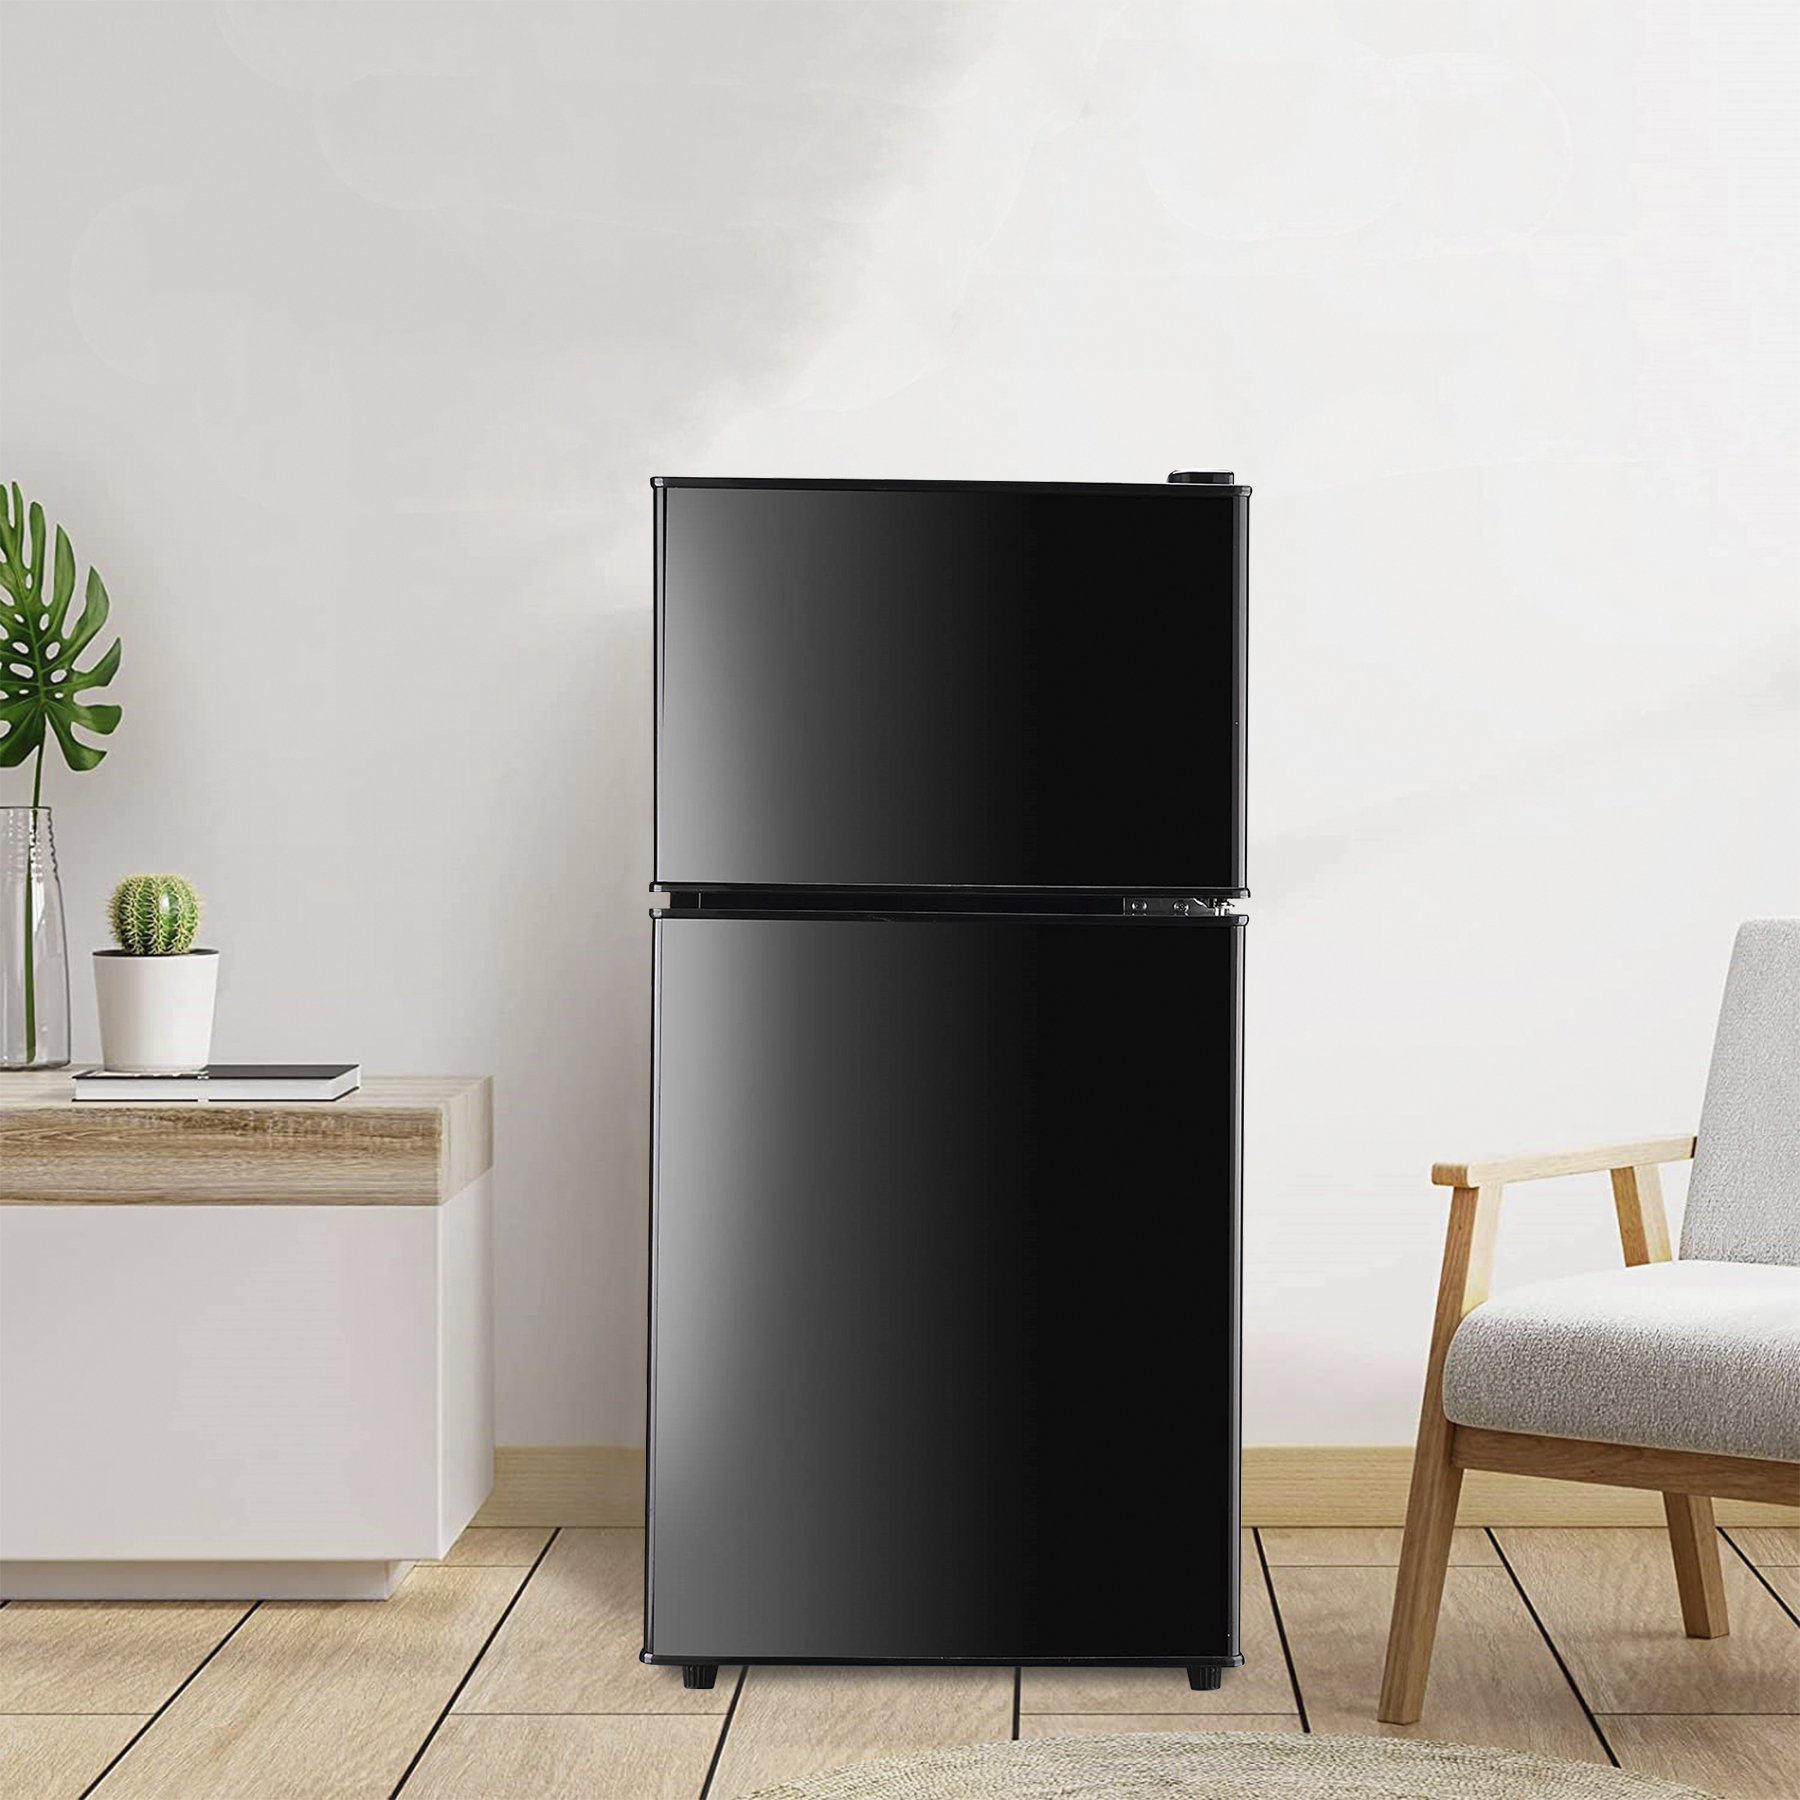 https://assets.wfcdn.com/im/63700692/compr-r85/2506/250646887/wedohome-35-cu-ft-retro-freestanding-mini-fridge-with-freezer-2-door-compact-refrigerator-with-top-freezer.jpg